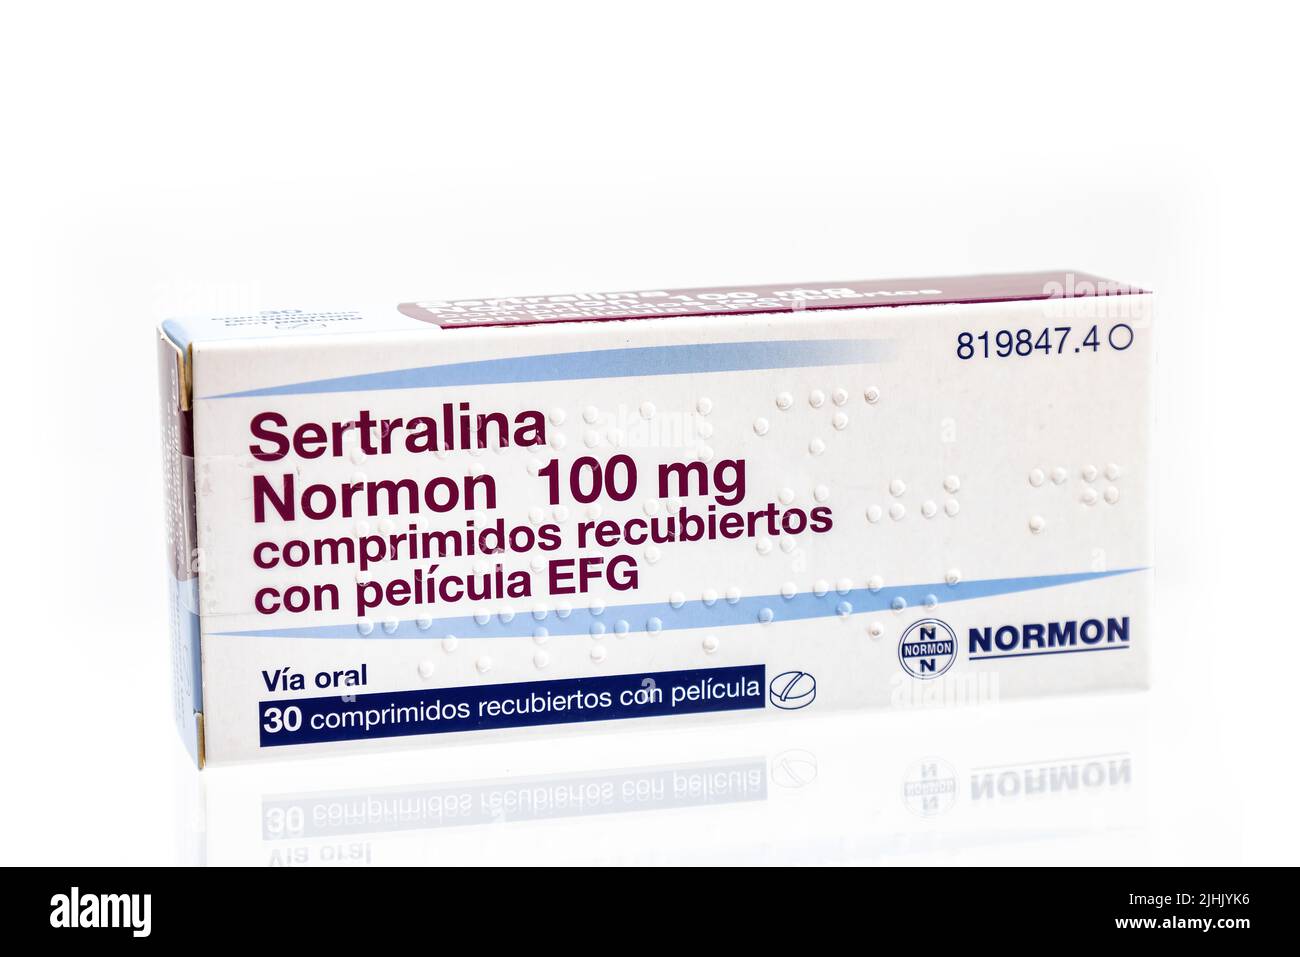 Huelva, Spanien - 19. Juli 2022: Eine spanische Sertralinkiste aus dem Labor von Normon. Es ist ein Antidepressivum des selektiven Serotonin-Wiederaufnahmehemmers (SSR Stockfoto